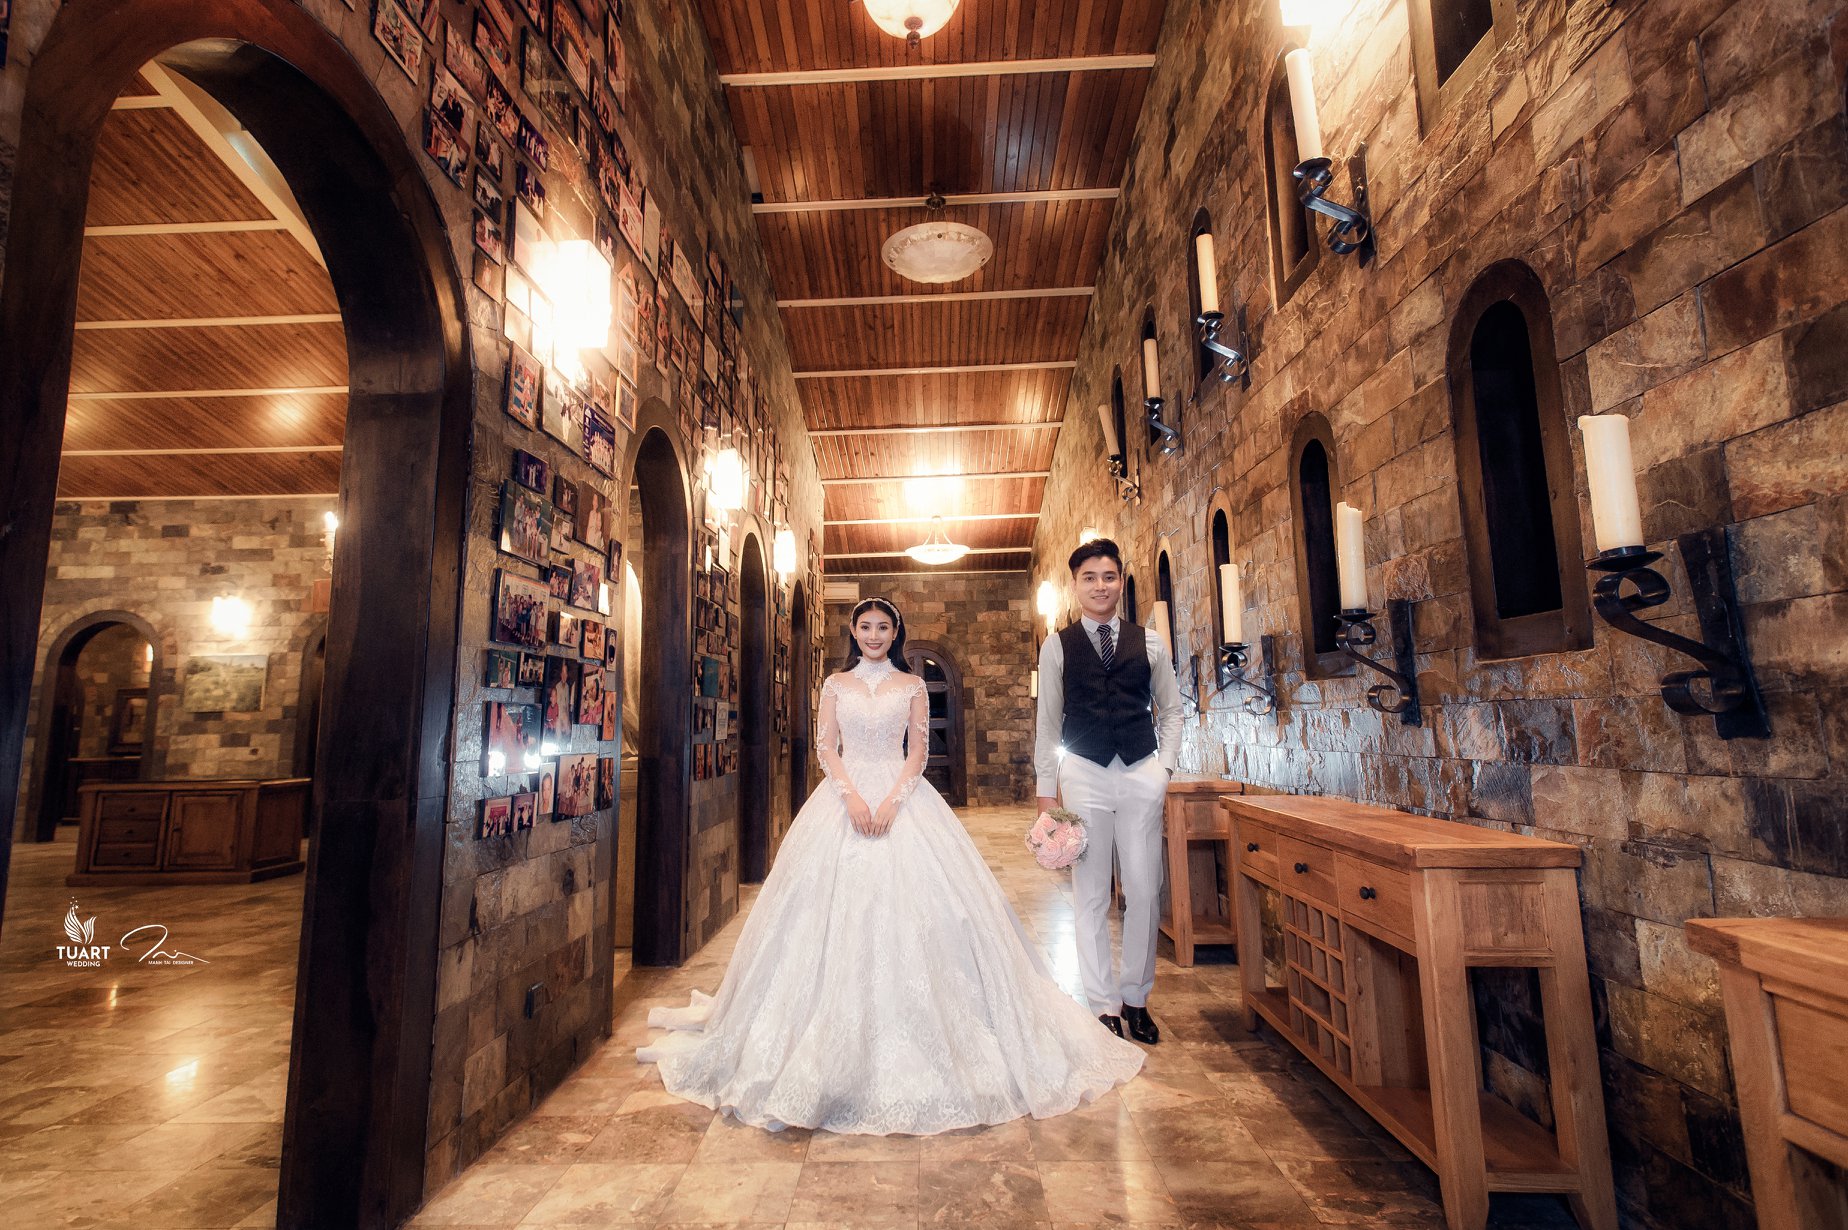 Album chụp hình cưới đẹp tại Hồ Chí Minh thành phố đáng sống 4